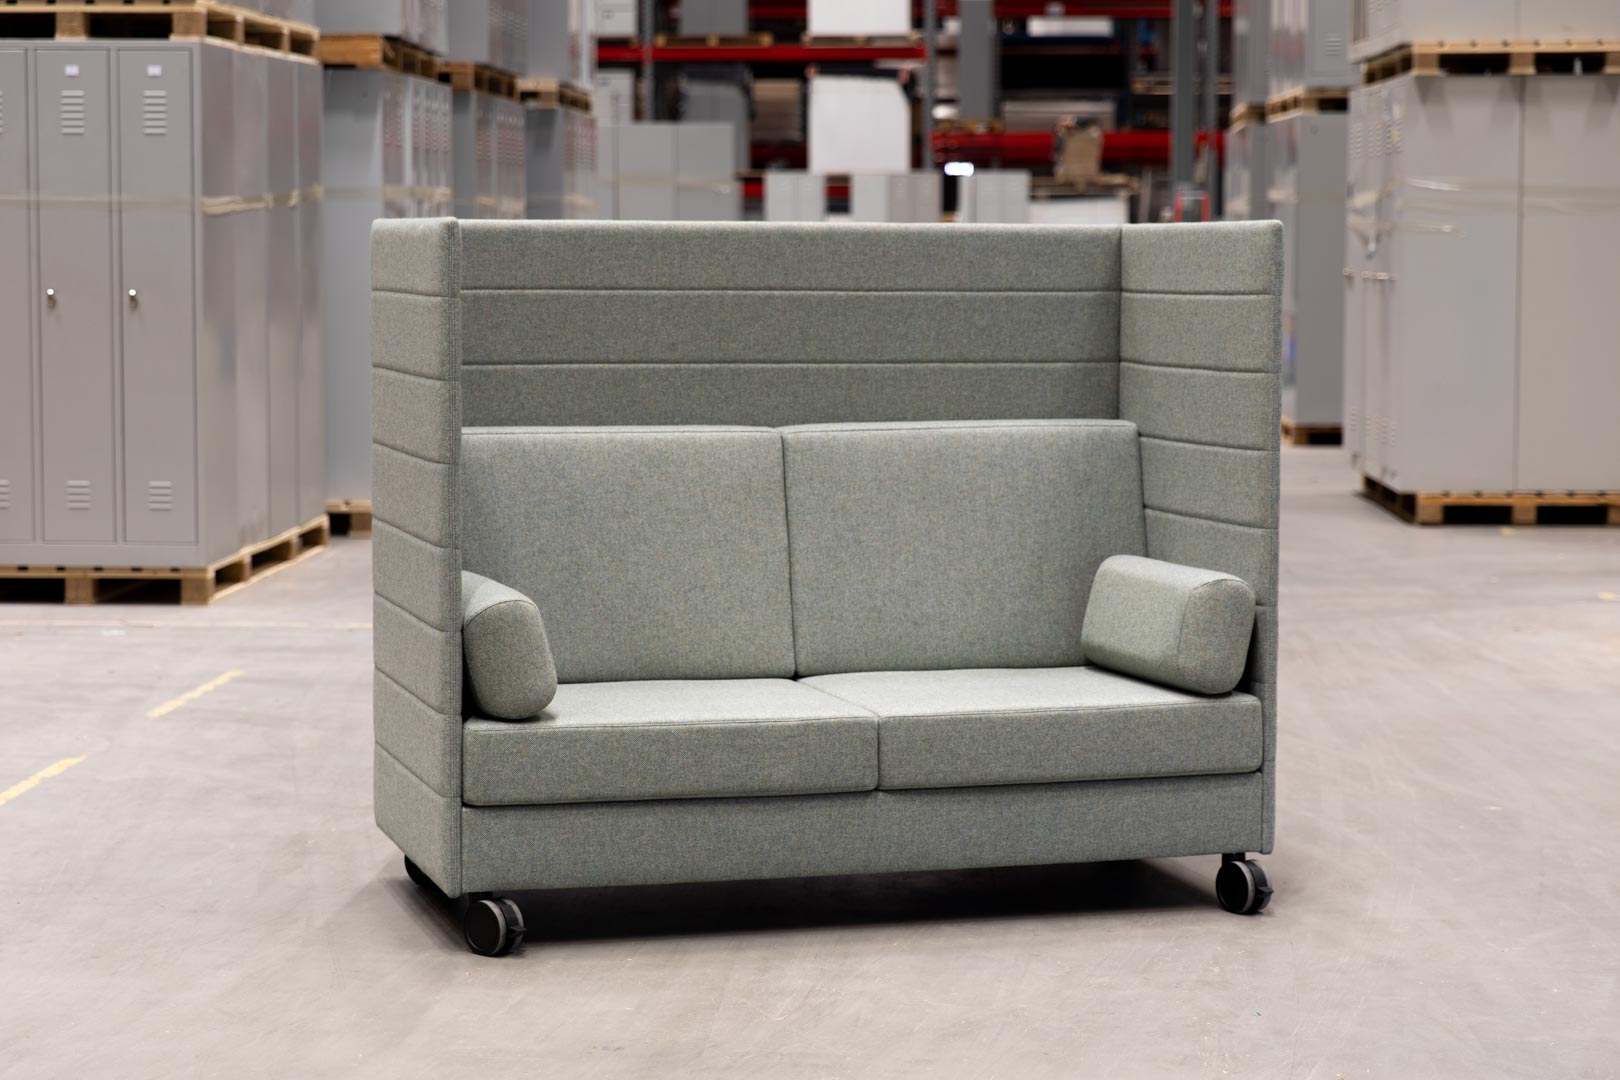 Flexibel en multi-inzetbaar design meubilair